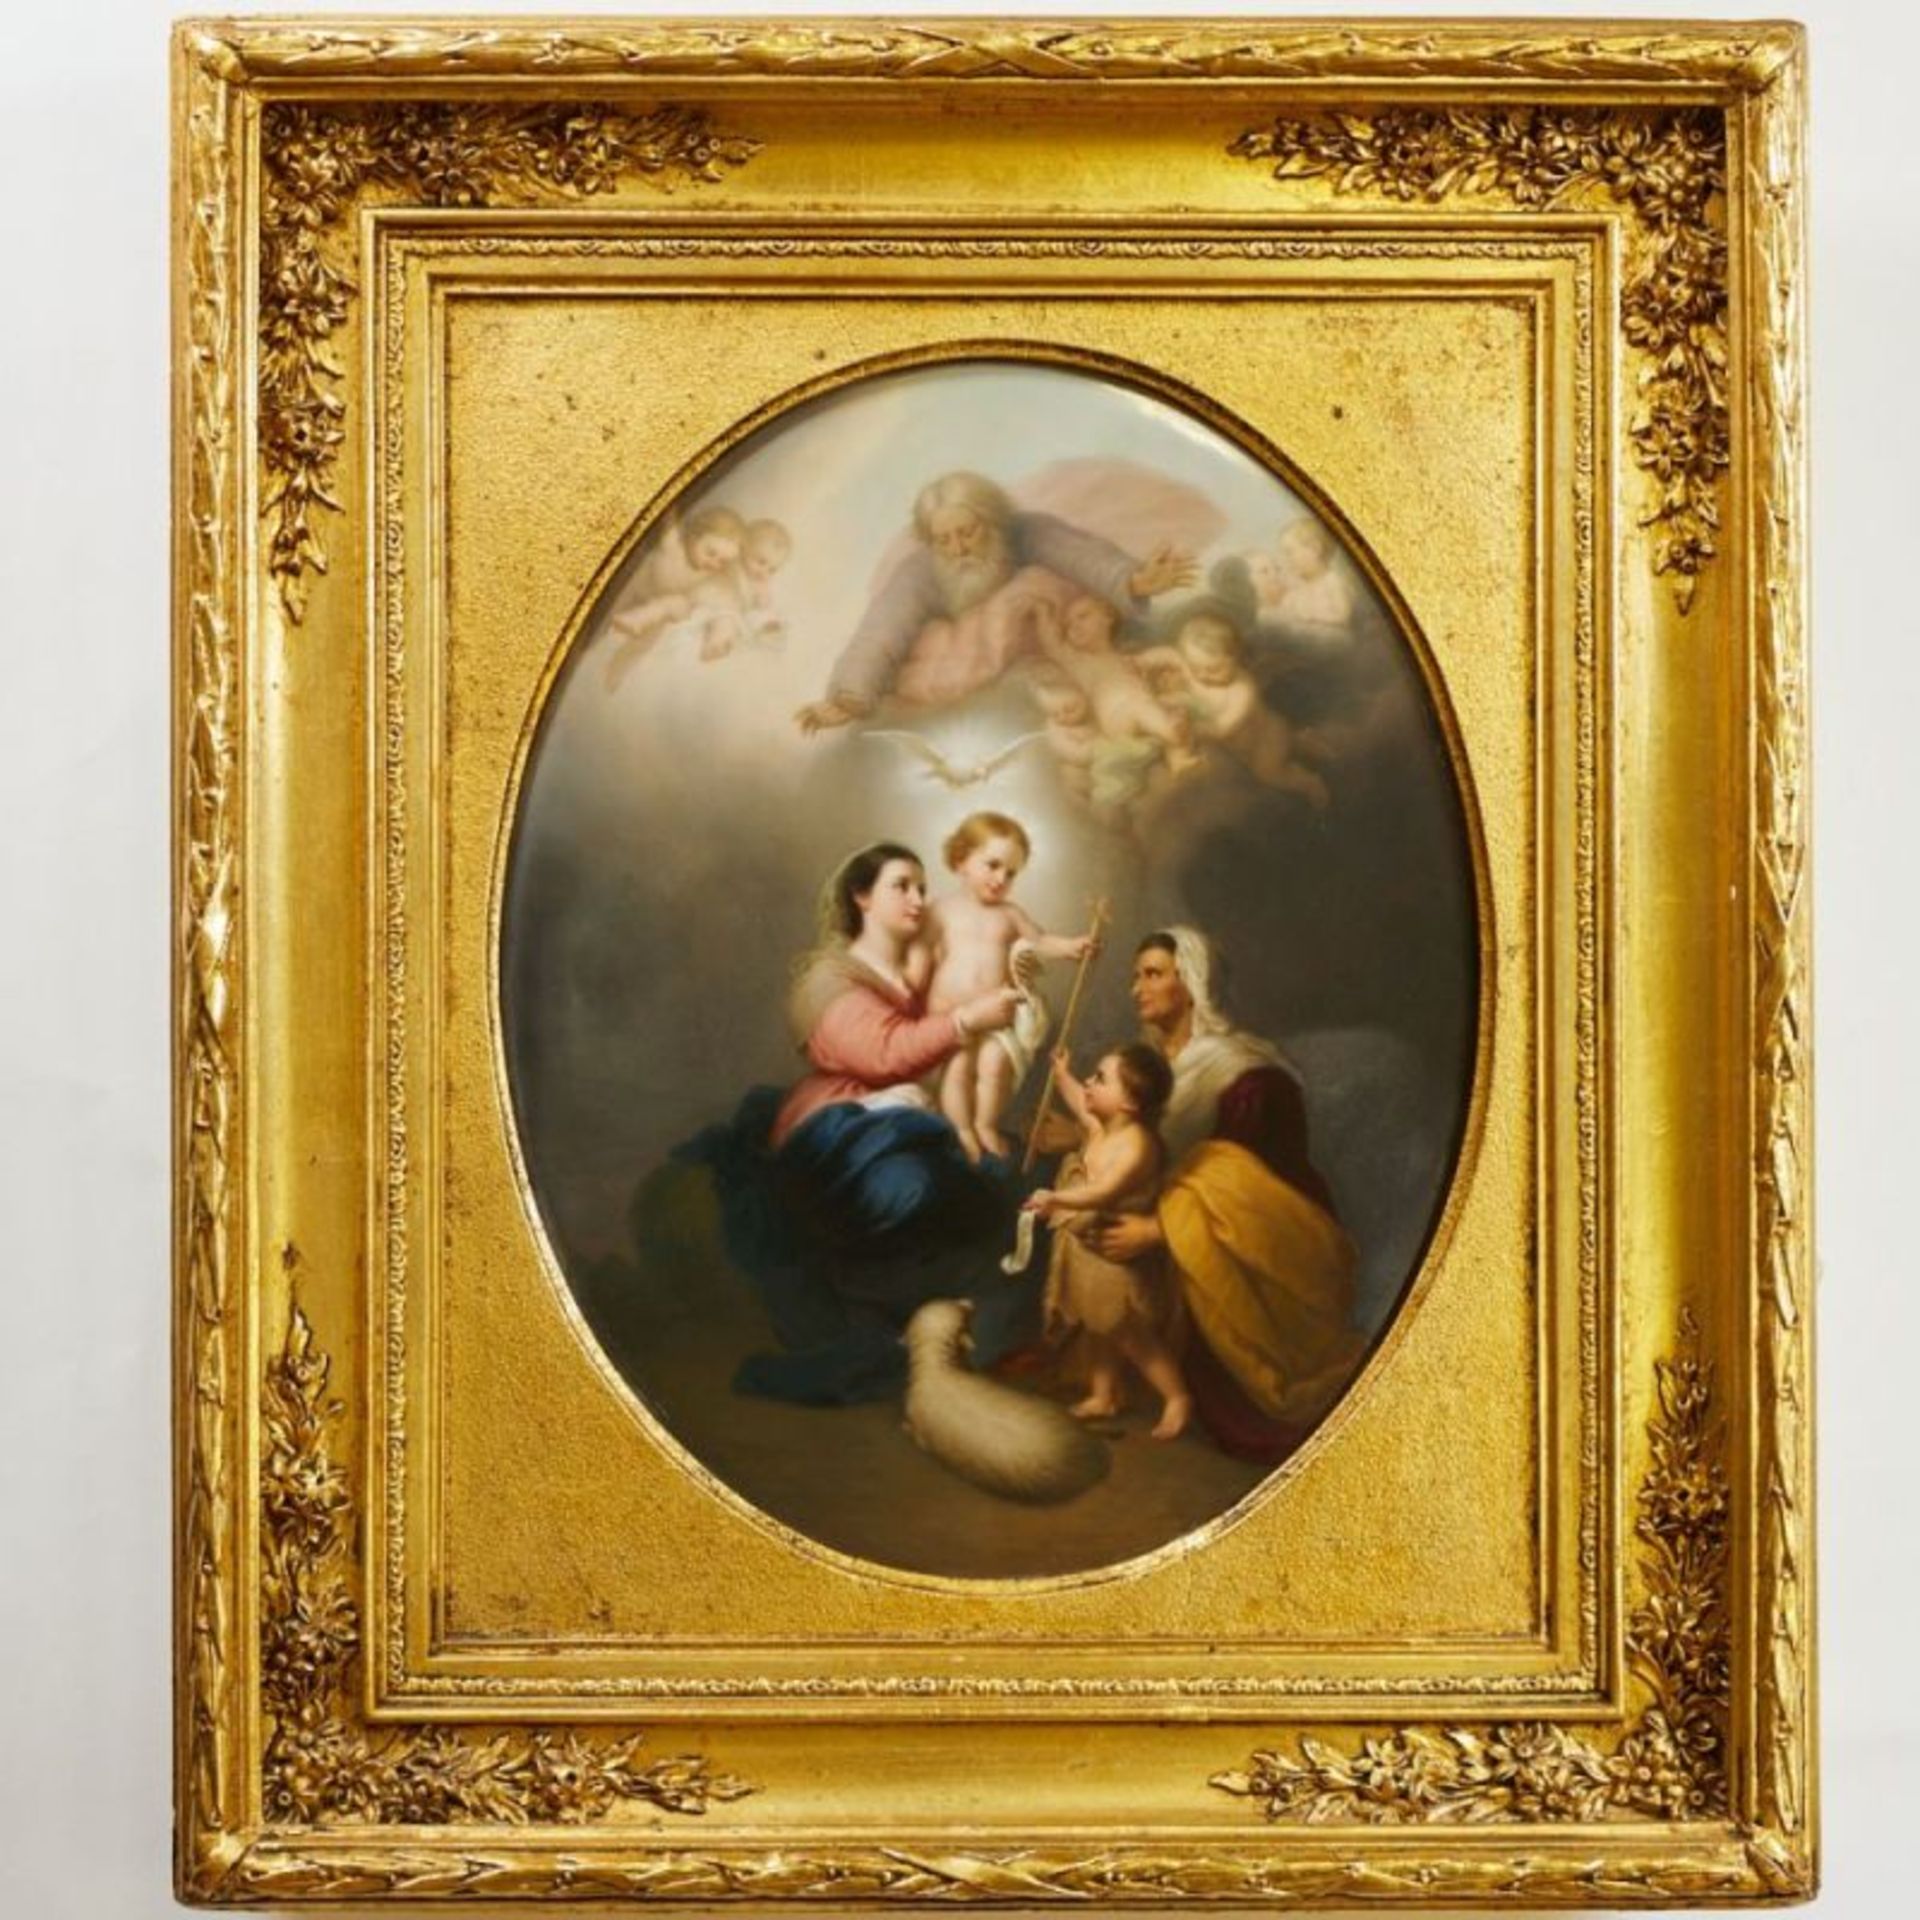 Große ovale Bildplatte Die heilige Familie" (Die Madonna von Sevilla) - Madonna mit Christuskind und